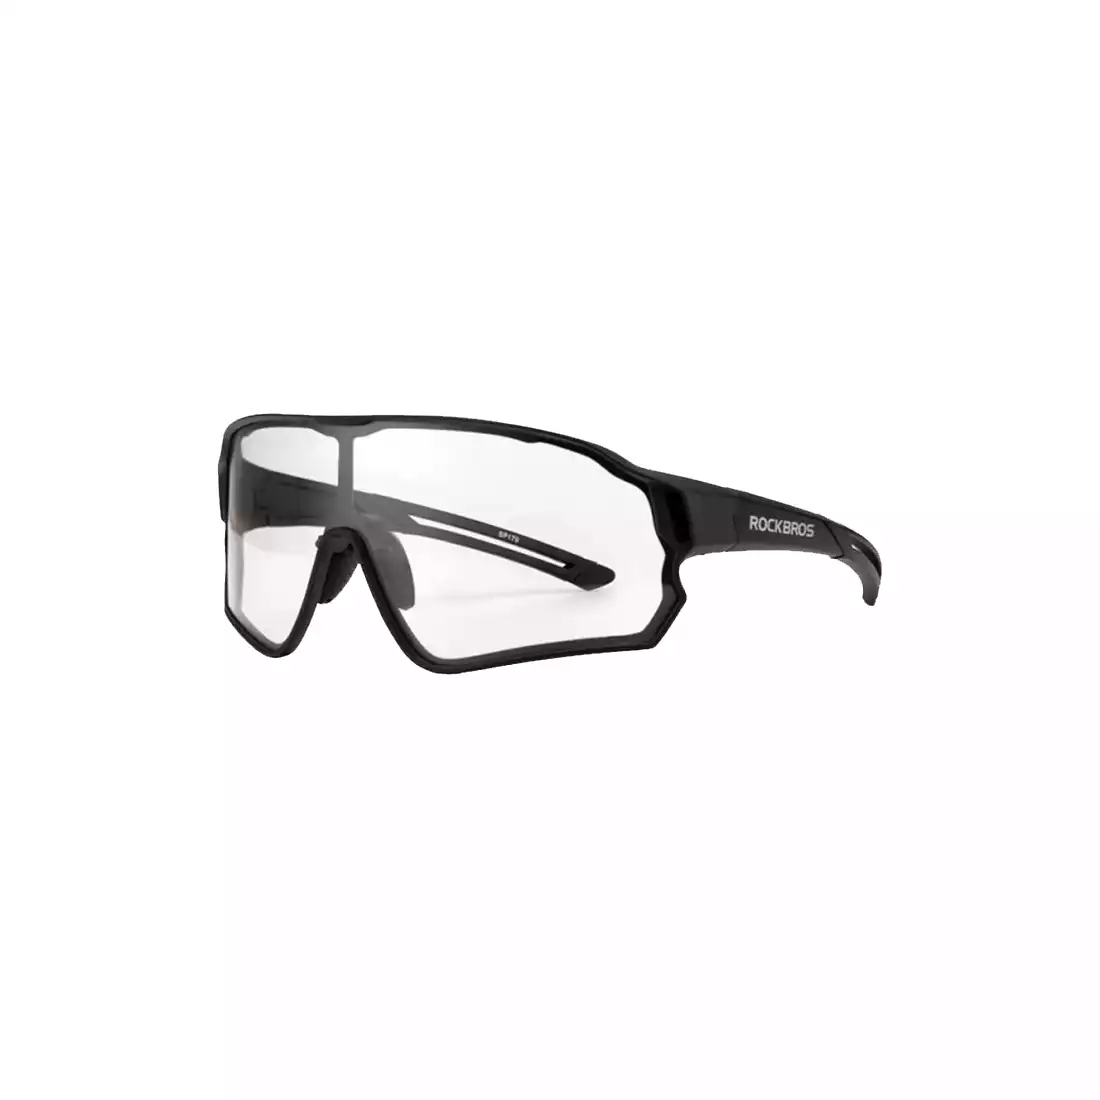 Rockbros 10139 okulary rowerowe / sportowe z fotochromem czarne